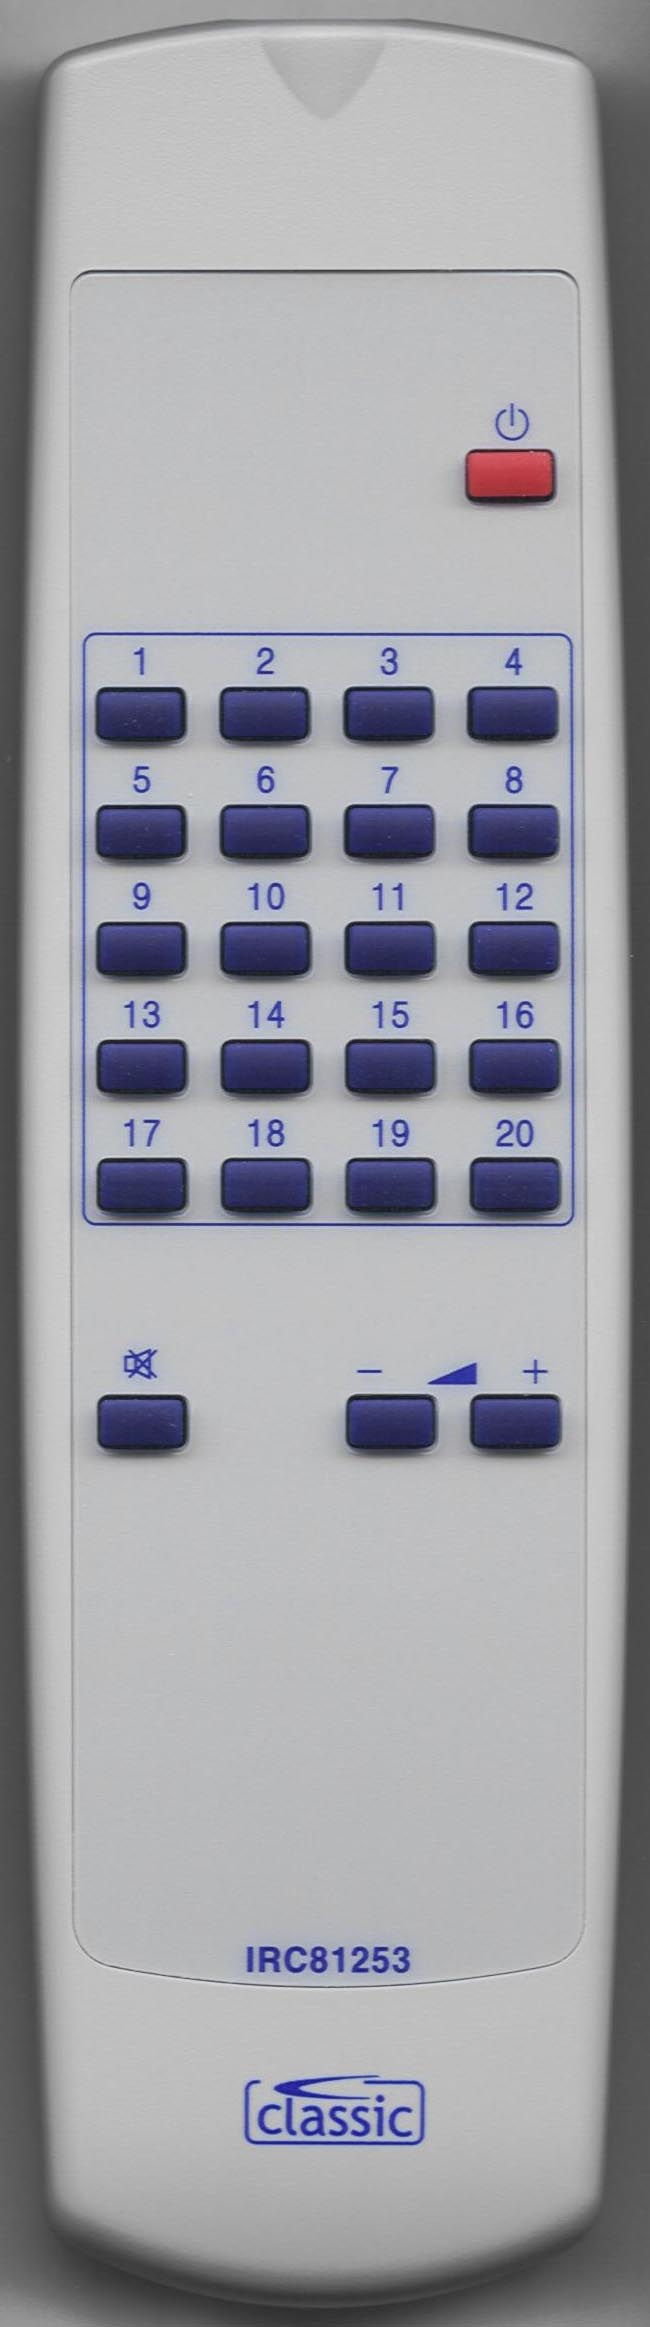 SAMSUNG 3F14-00004-110 Remote Control